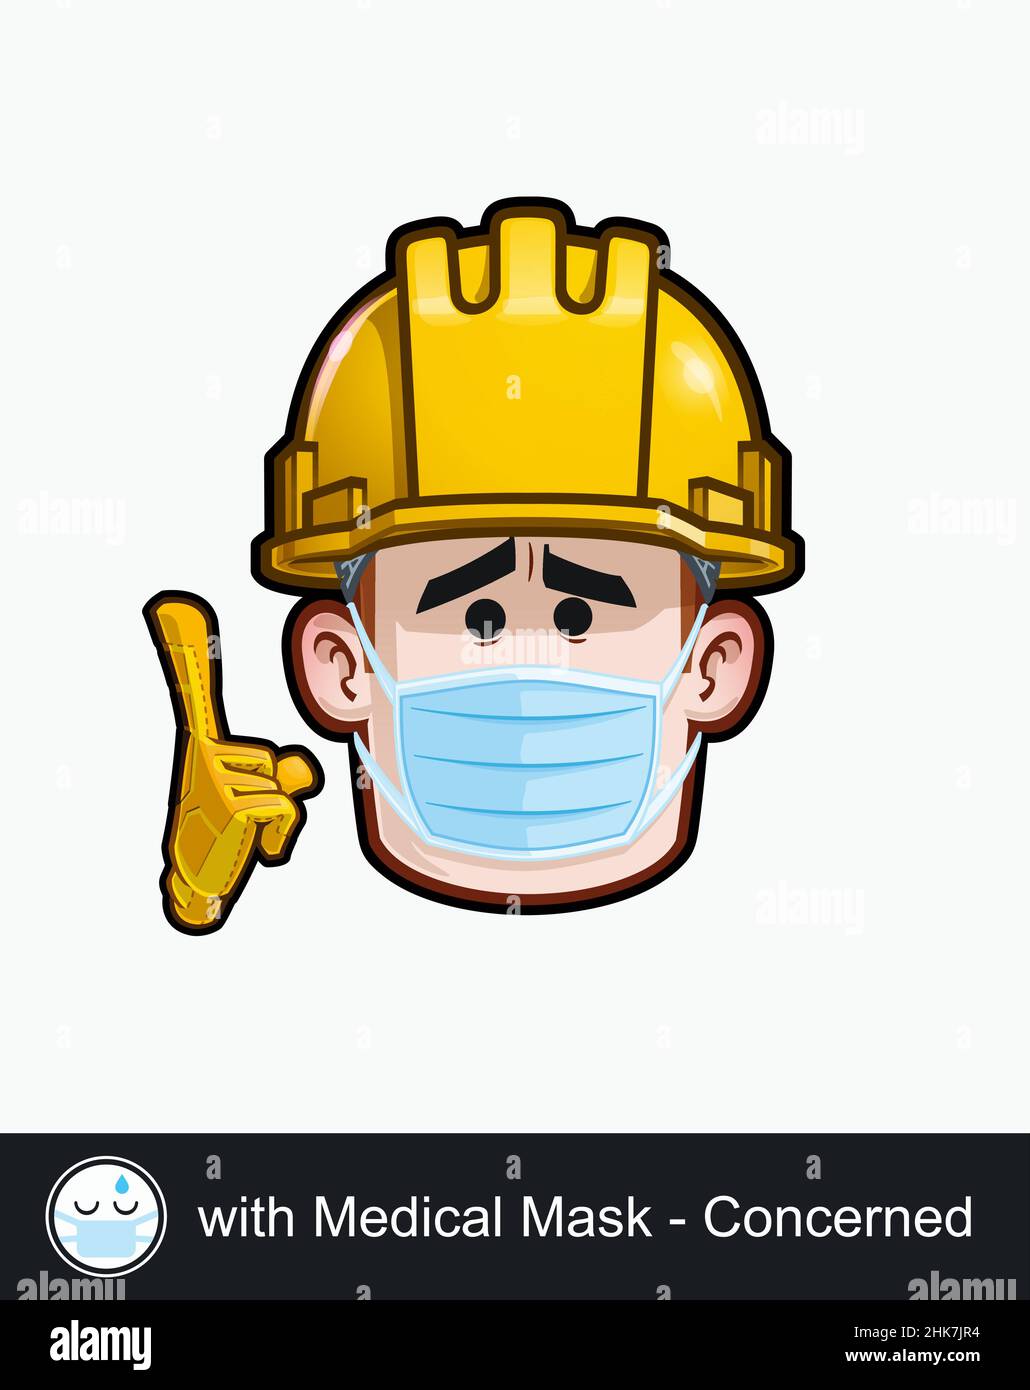 Ikone eines Bauarbeiters Gesicht mit besorgt mit Medical Mask emotionalen Ausdruck. Alle Elemente übersichtlich auf gut beschriebenen Ebenen und Gruppen. Stock Vektor